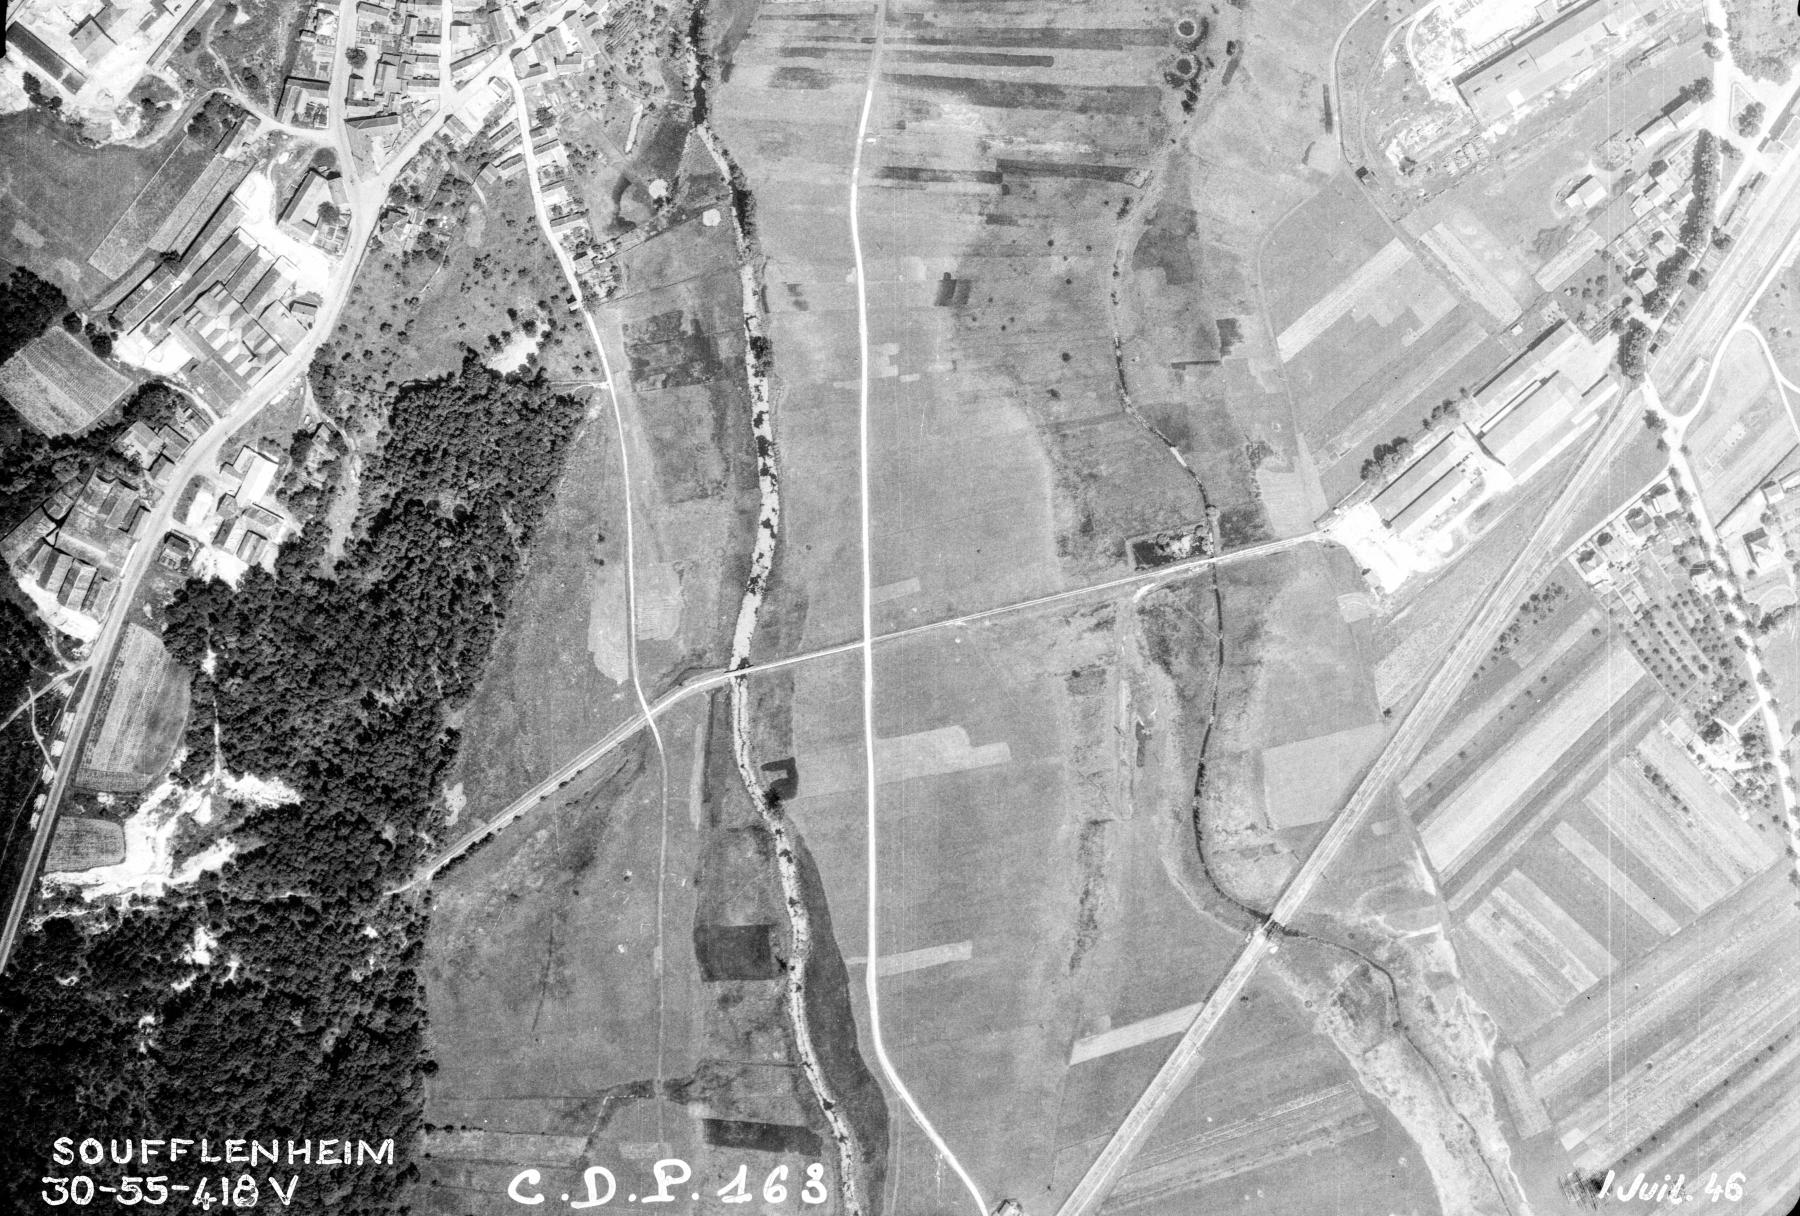 Ligne Maginot - VF60 - BALLASTIèRE DE SOUFFLENHEIM - (RESEAU - Voie 60 - Antenne ou rocade ferroviaire) - Photo aérienne 1946, extrait